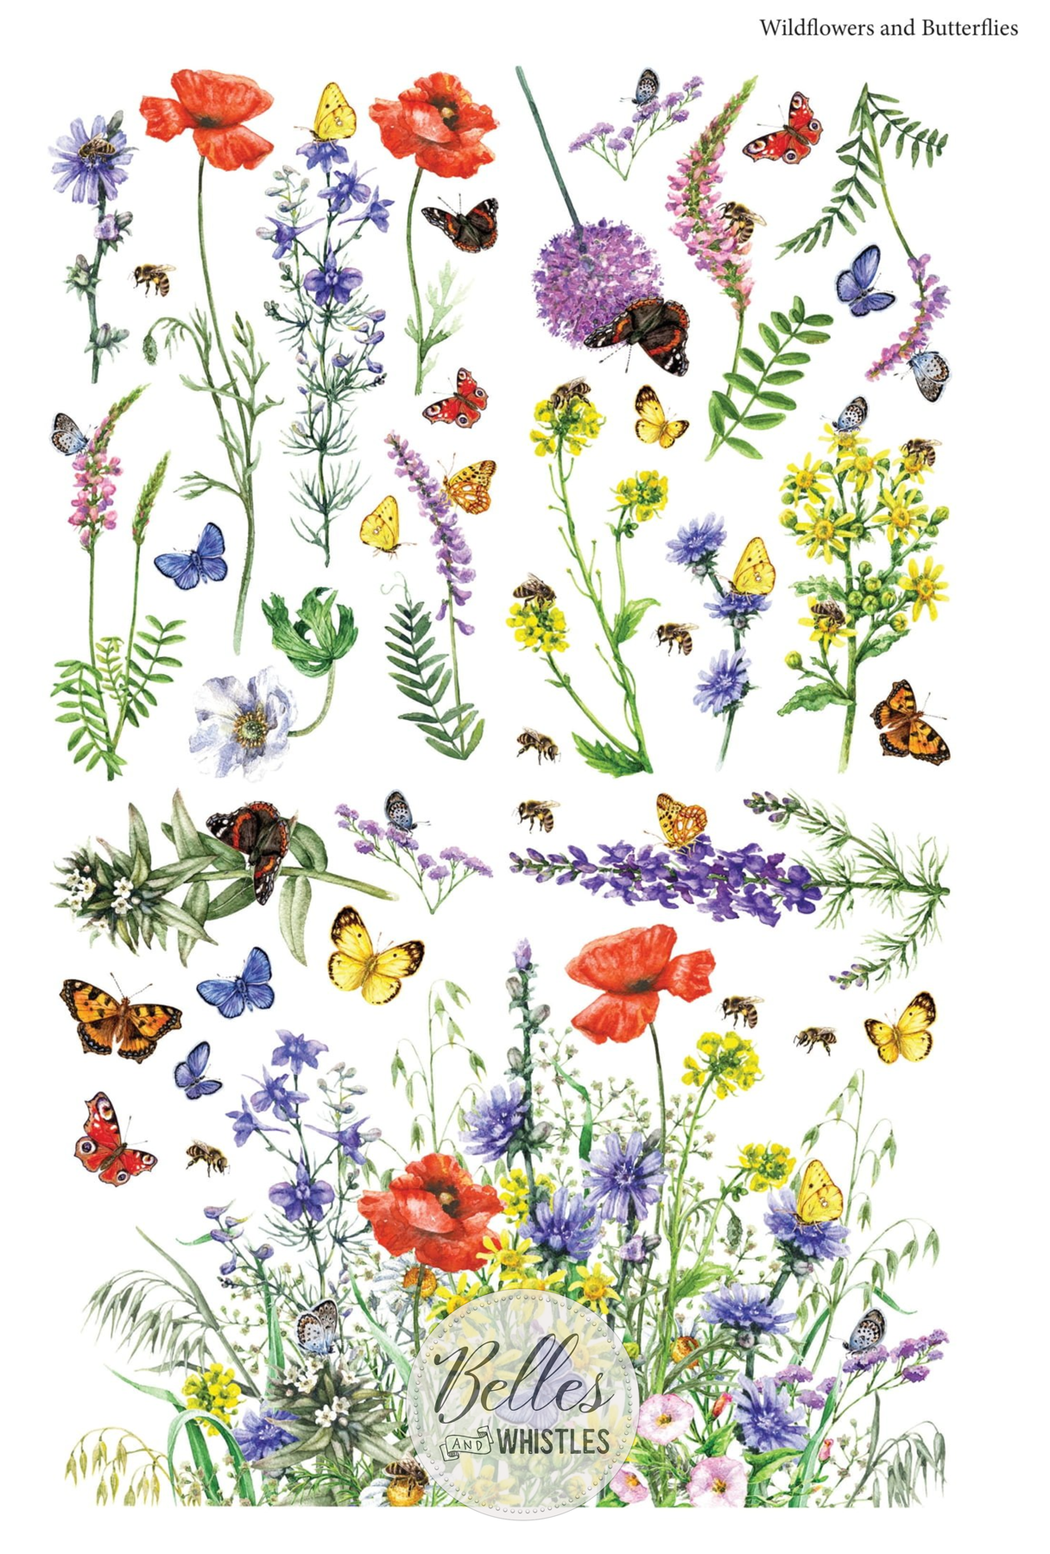 Belles & Whistles Transfer 24x38 - Wildflowers & Butterflies